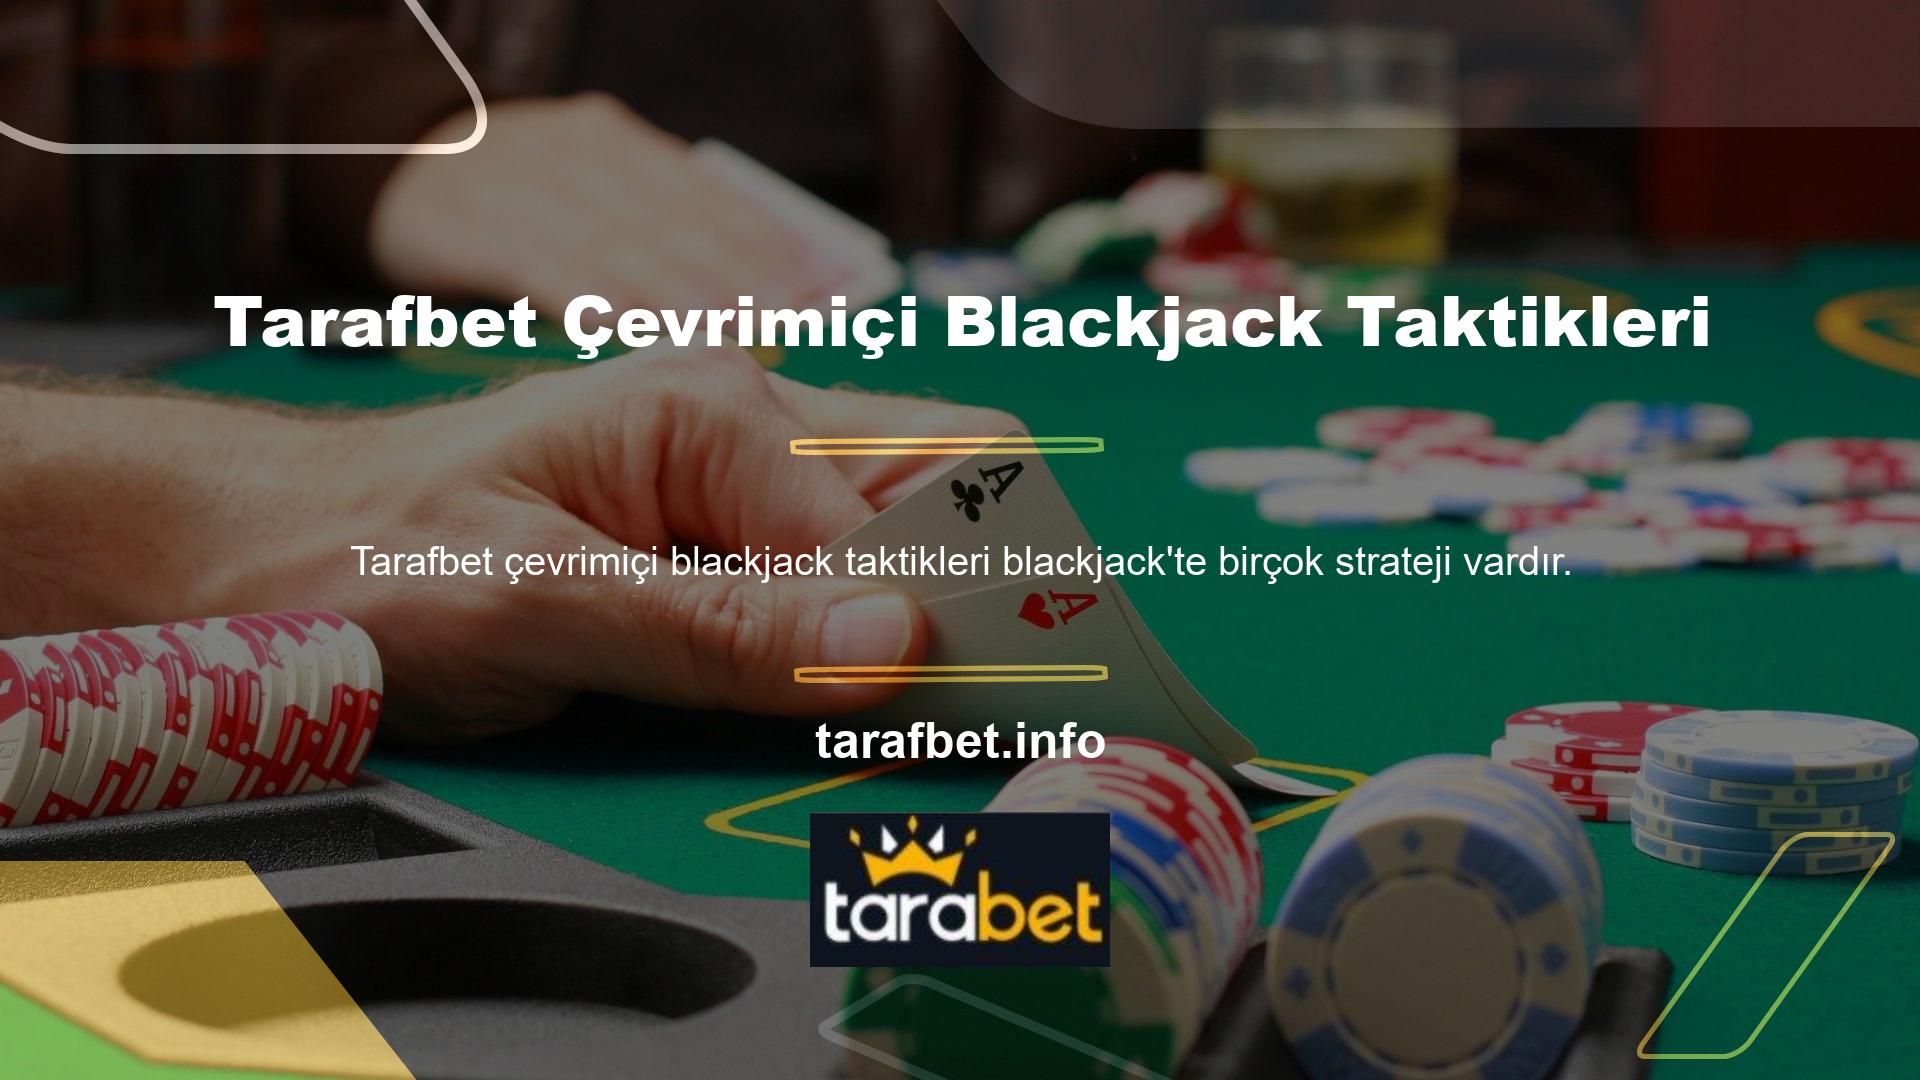 Blackjack Tarafbet çevrimiçi blackjack taktik oyun stratejisini biliyorsanız, kolayca büyük kazanabilirsiniz